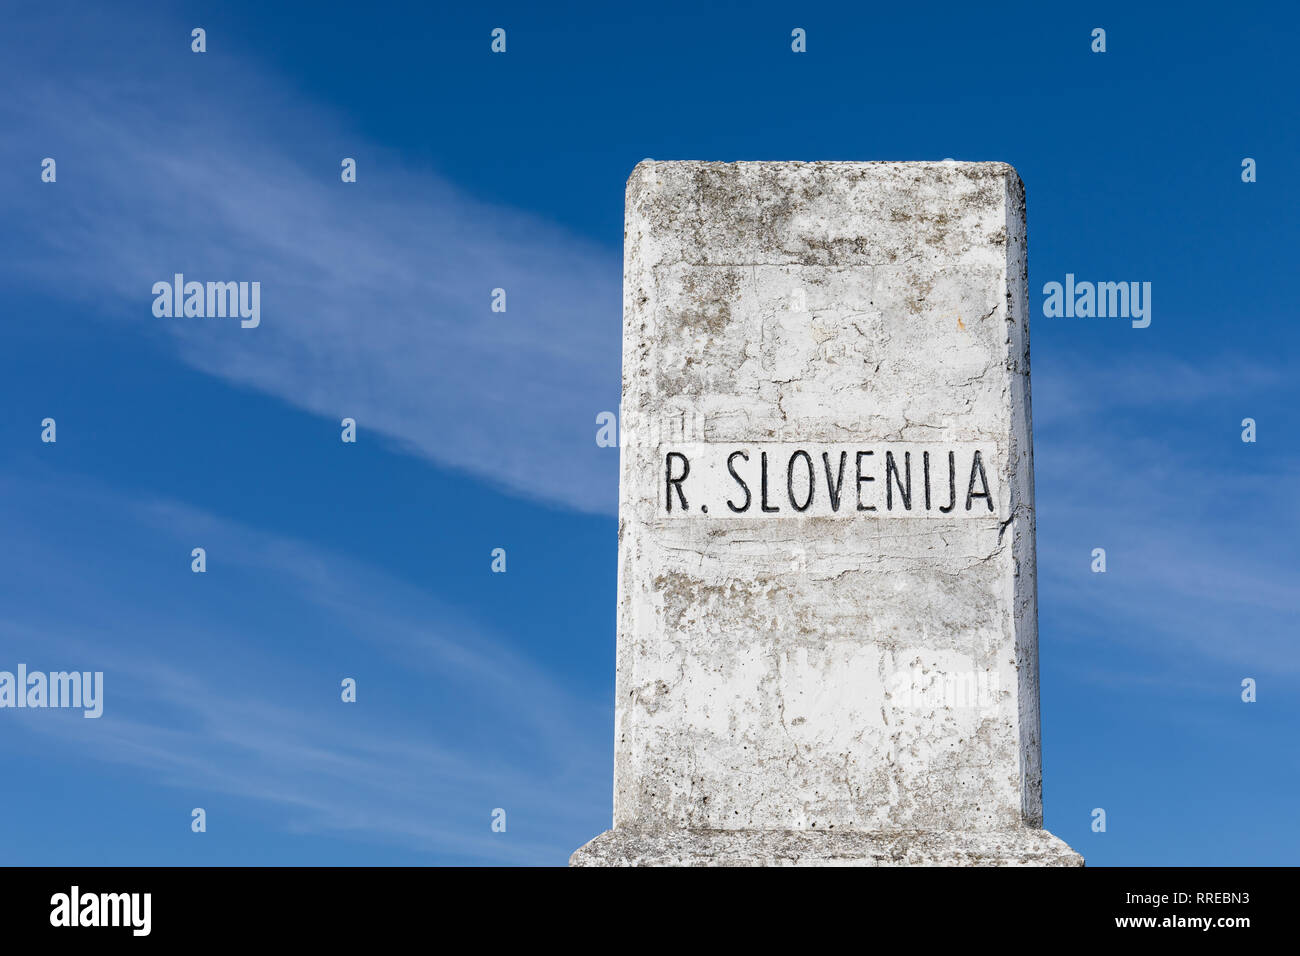 Einen Stein markiert die Grenze zwischen der Republik Slowenien und der Republik Italien - Lazarett (Lazzaretto), Slowenien Stockfoto